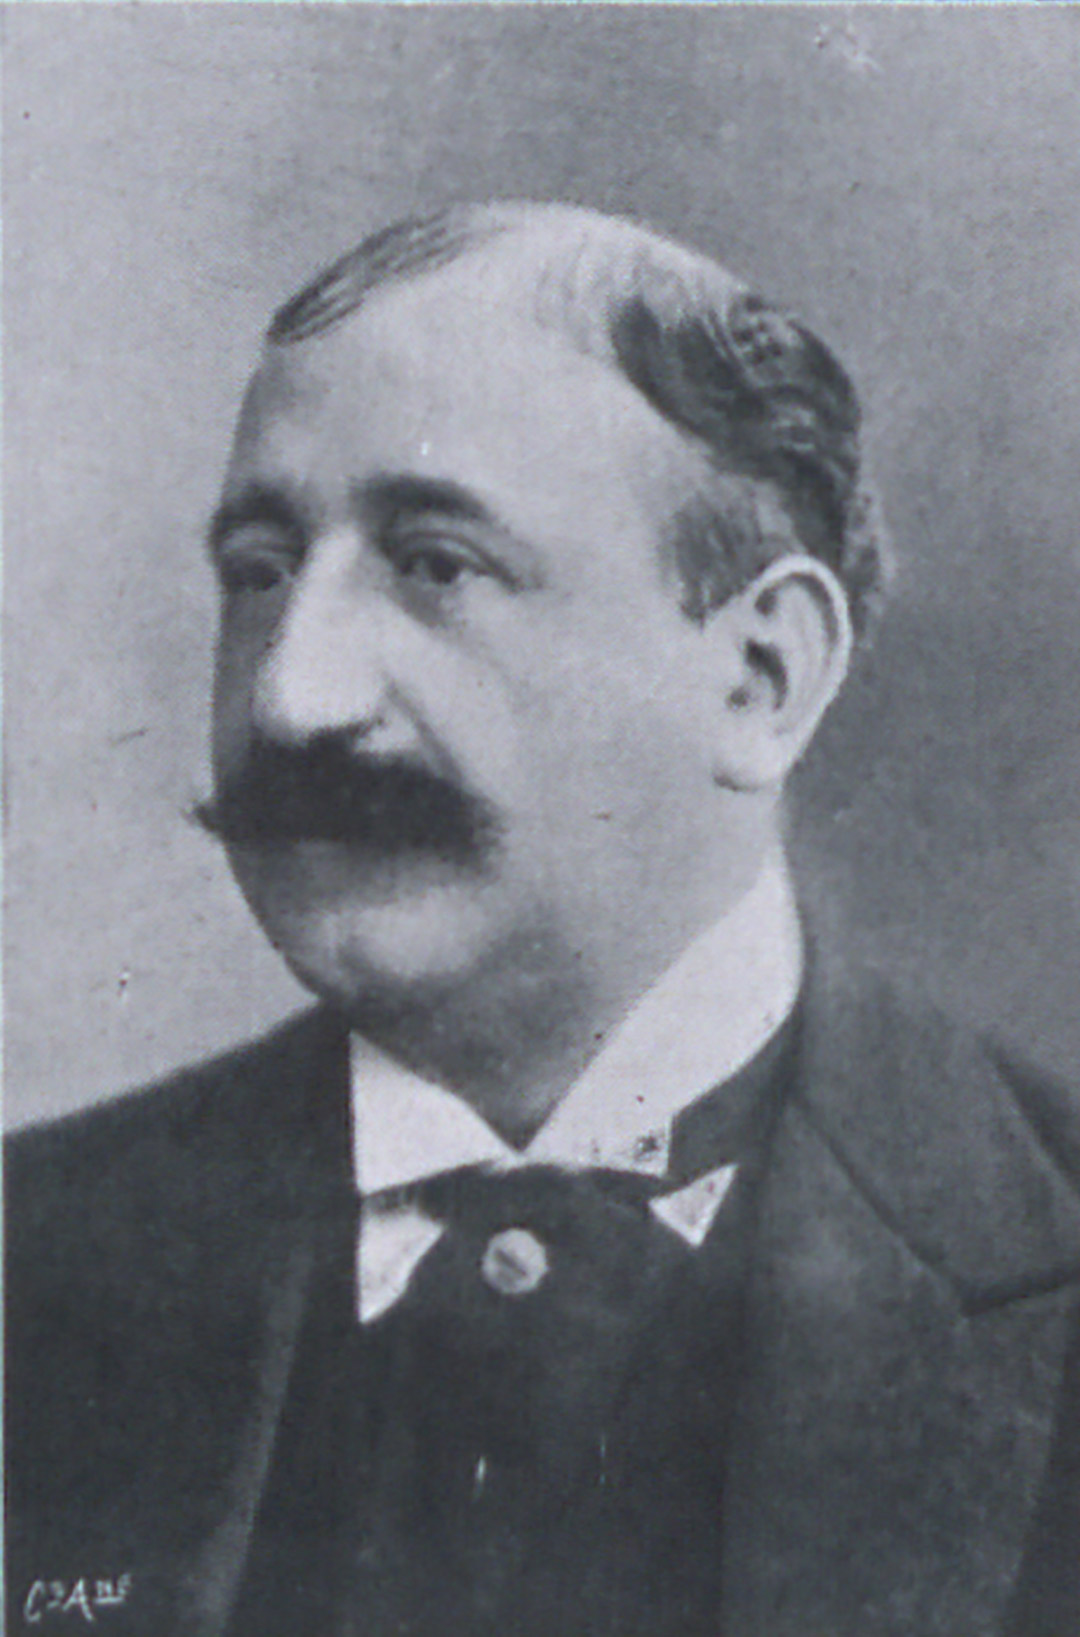 Portrait de Jean Psichari in Les défenseurs de la justice : affaire Dreyfus, 1899